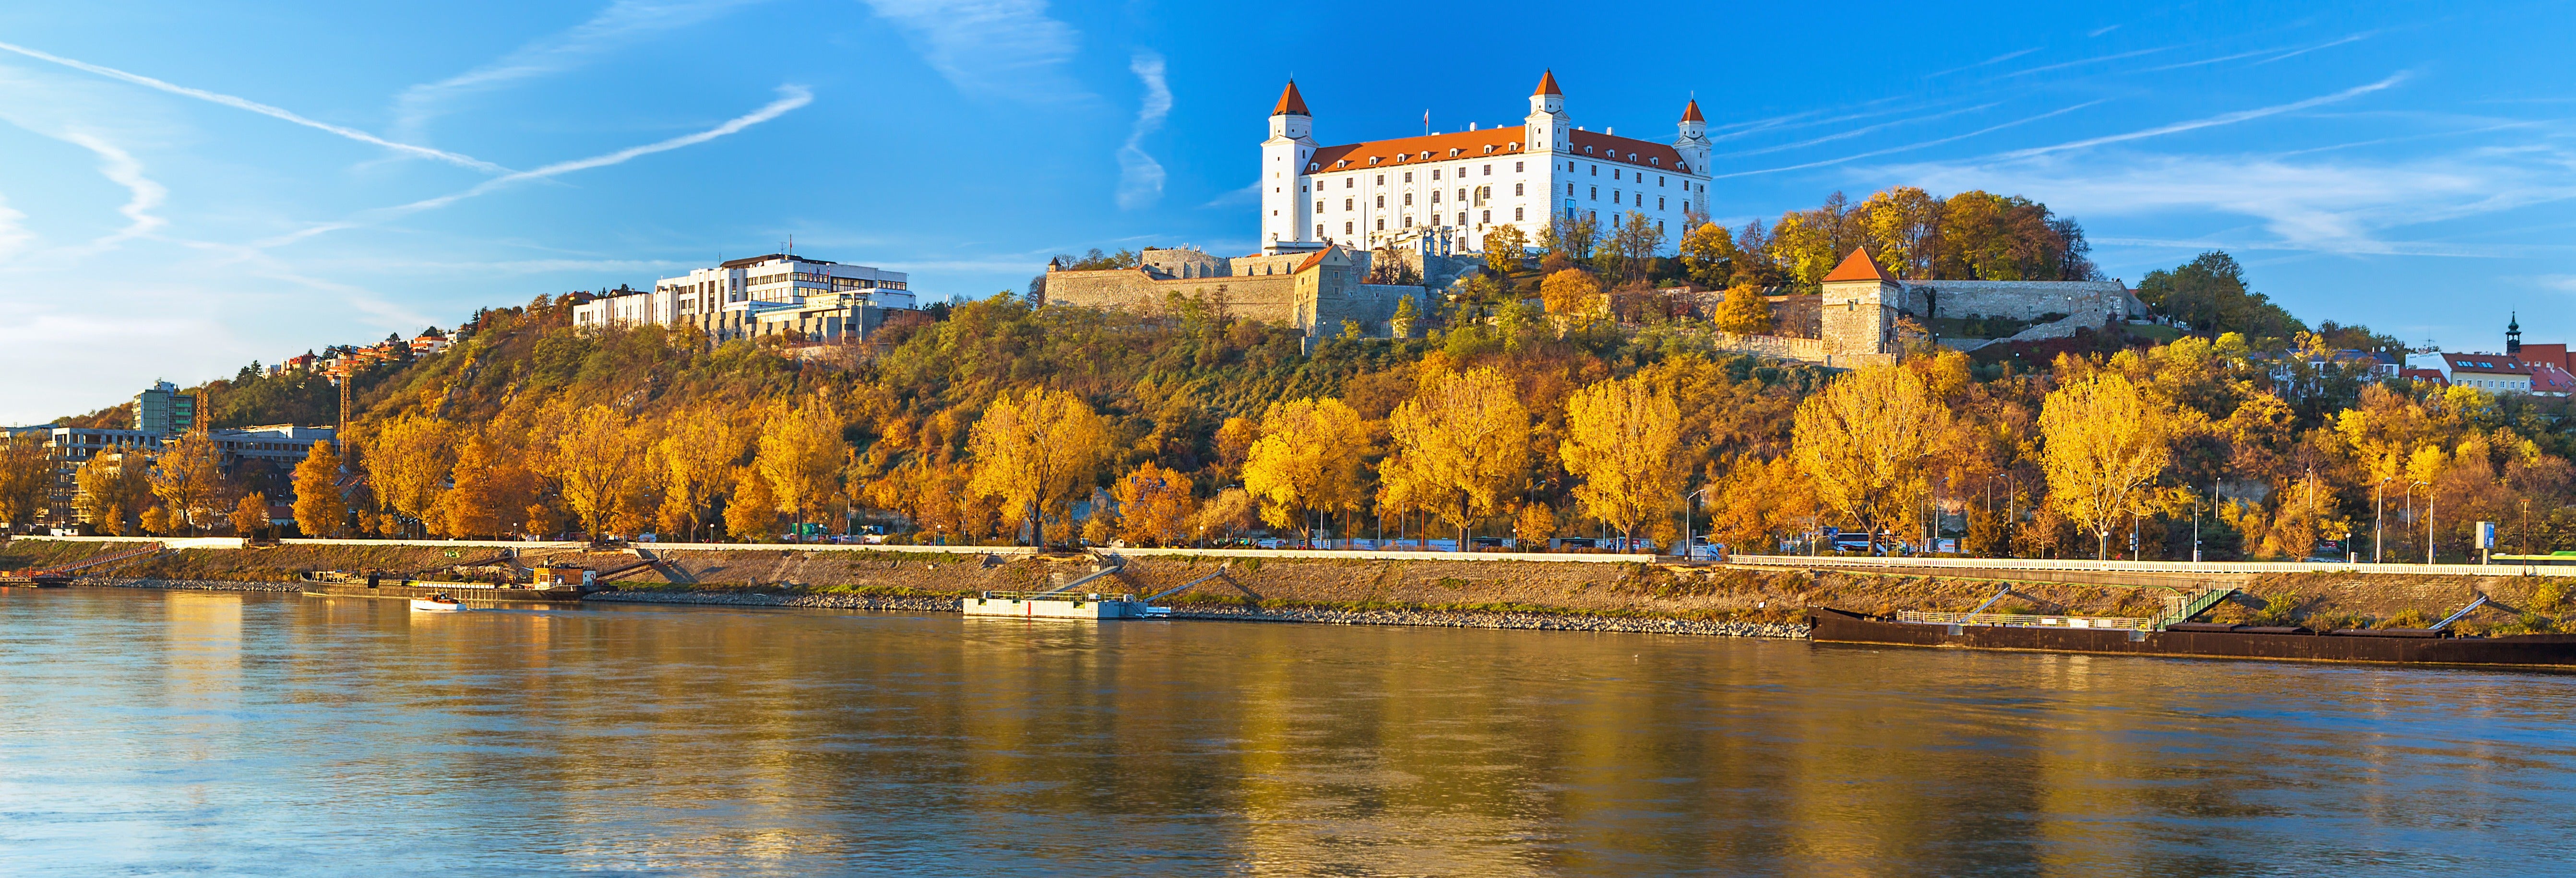 Resultado de imagem para Bratislava